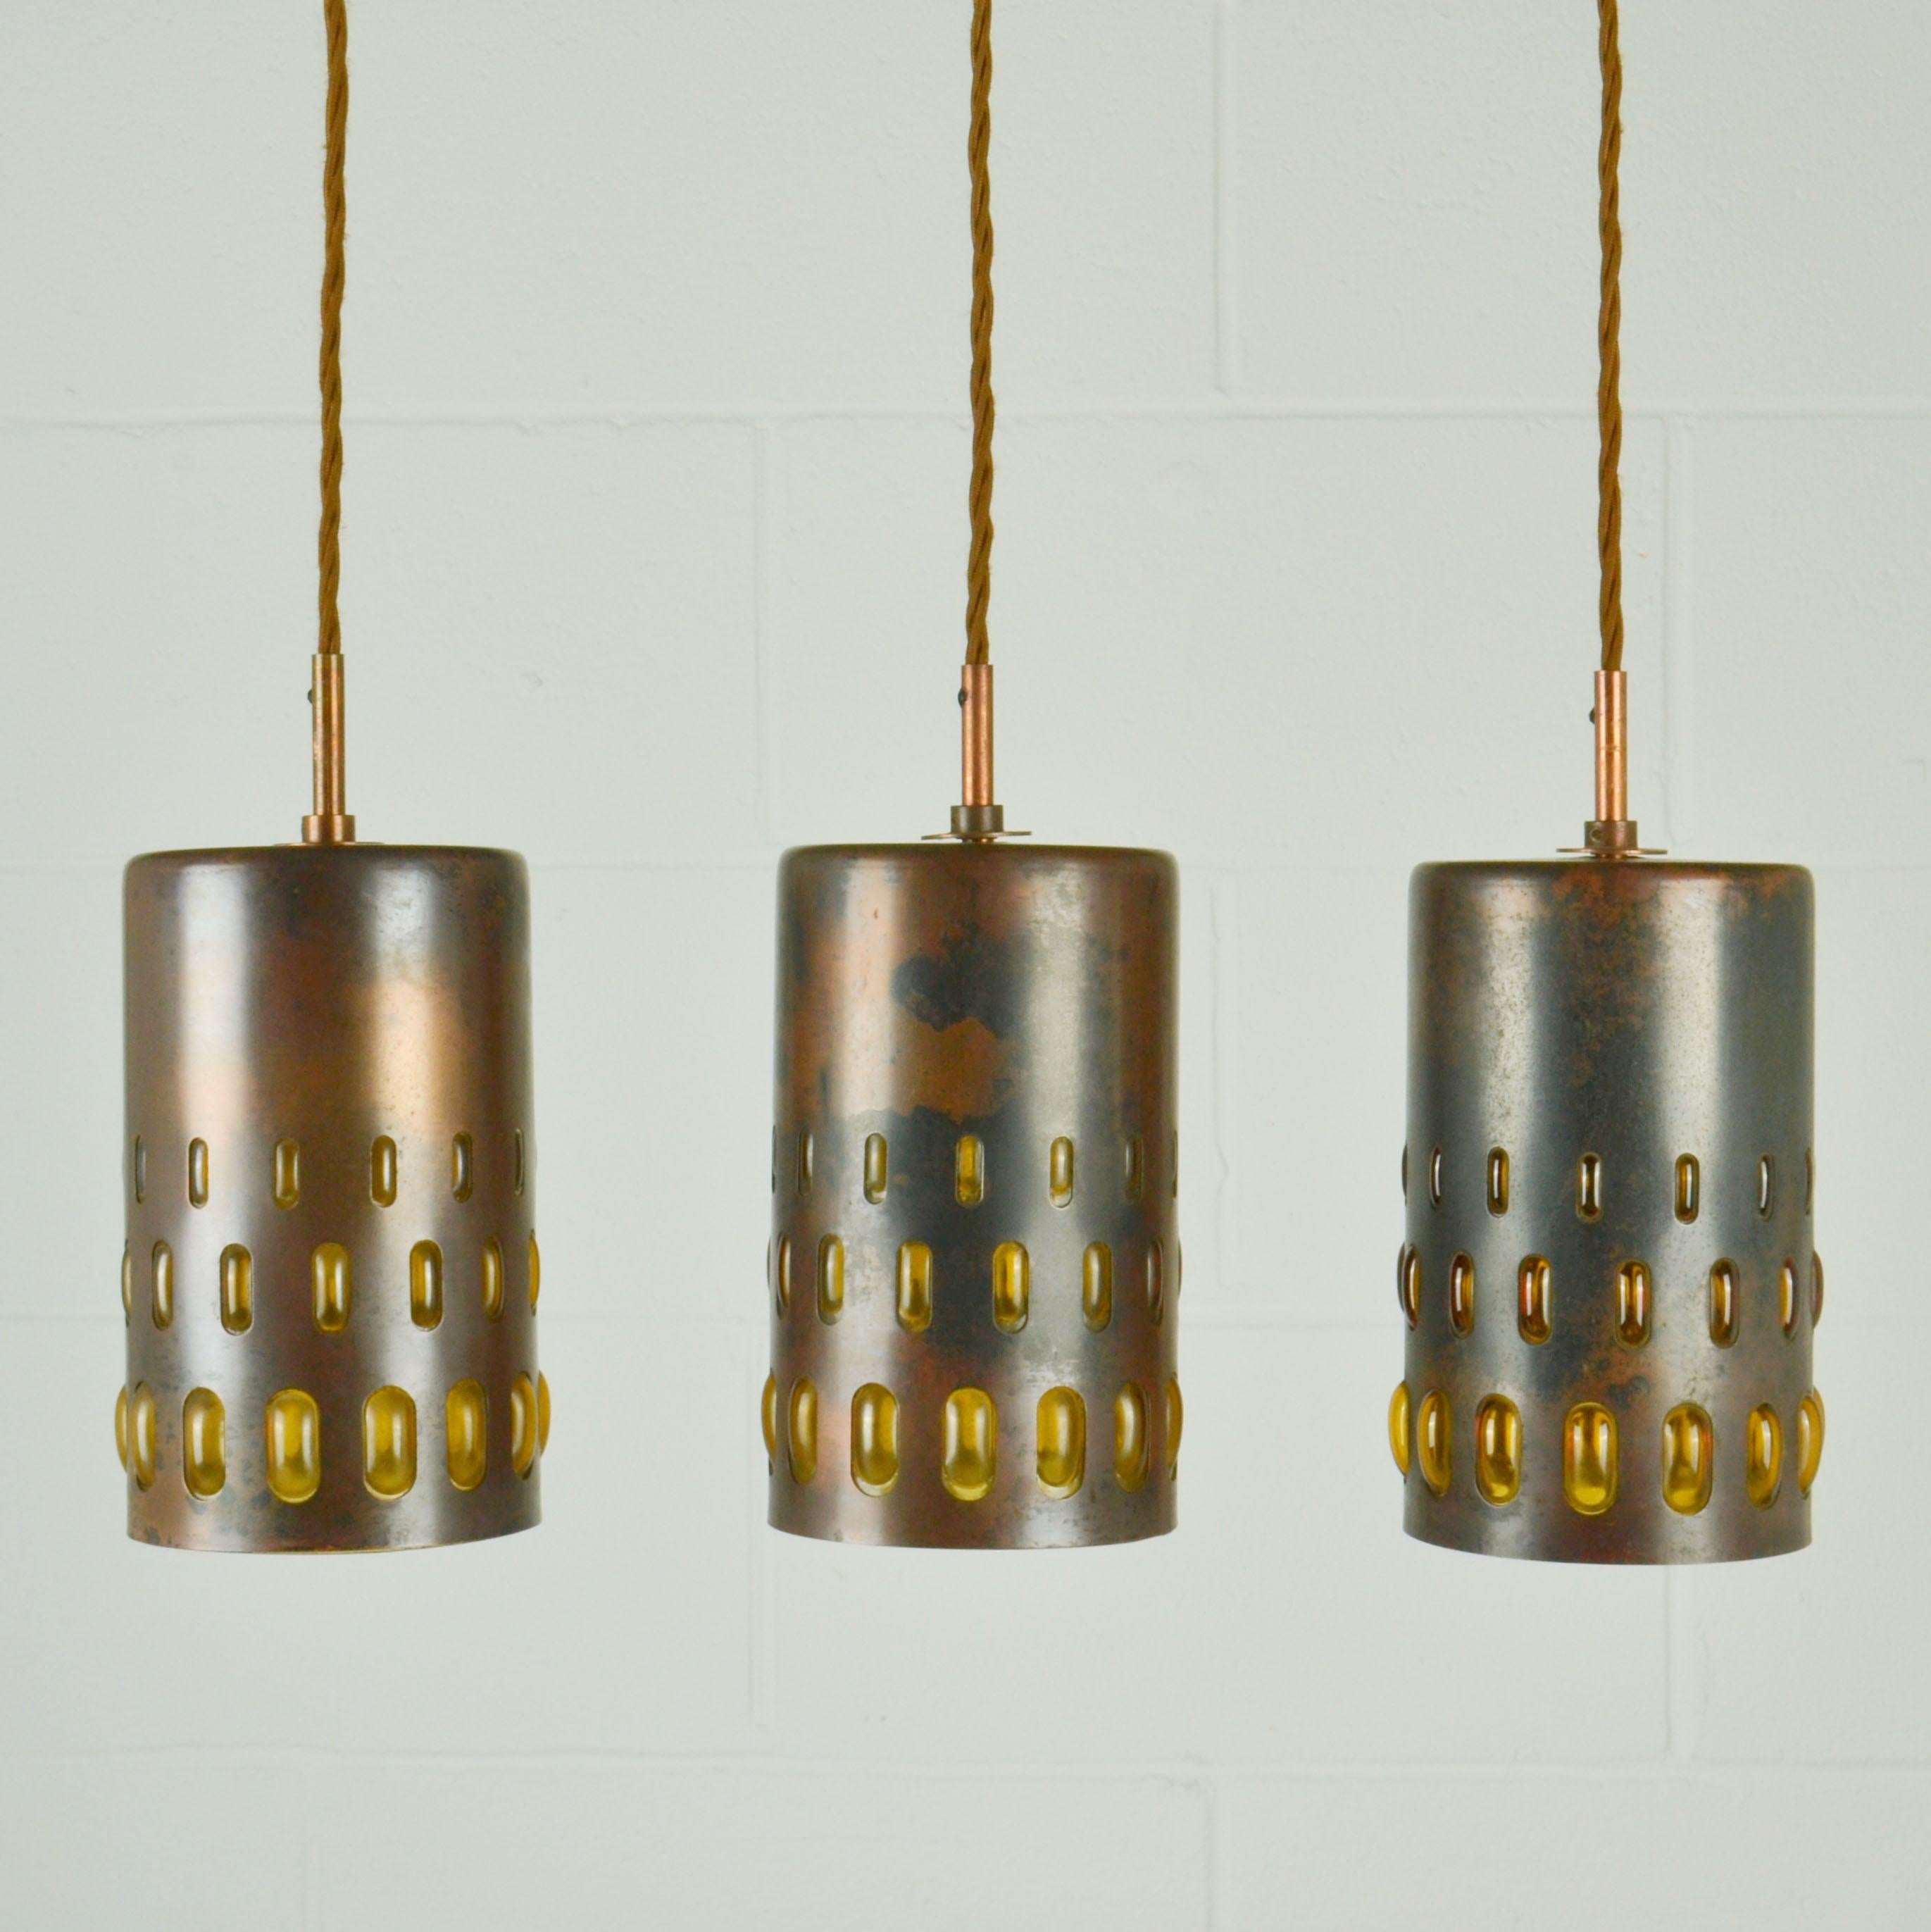 Ensemble de cinq lampes suspendues en verre ambré de forme conique, fabriquées à partir de verre soufflé et de cuivre oxydé. Ils sont tous uniques dans leur exécution. Le verre expansé d'un ambre profond est soufflé avec régularité dans des cadres